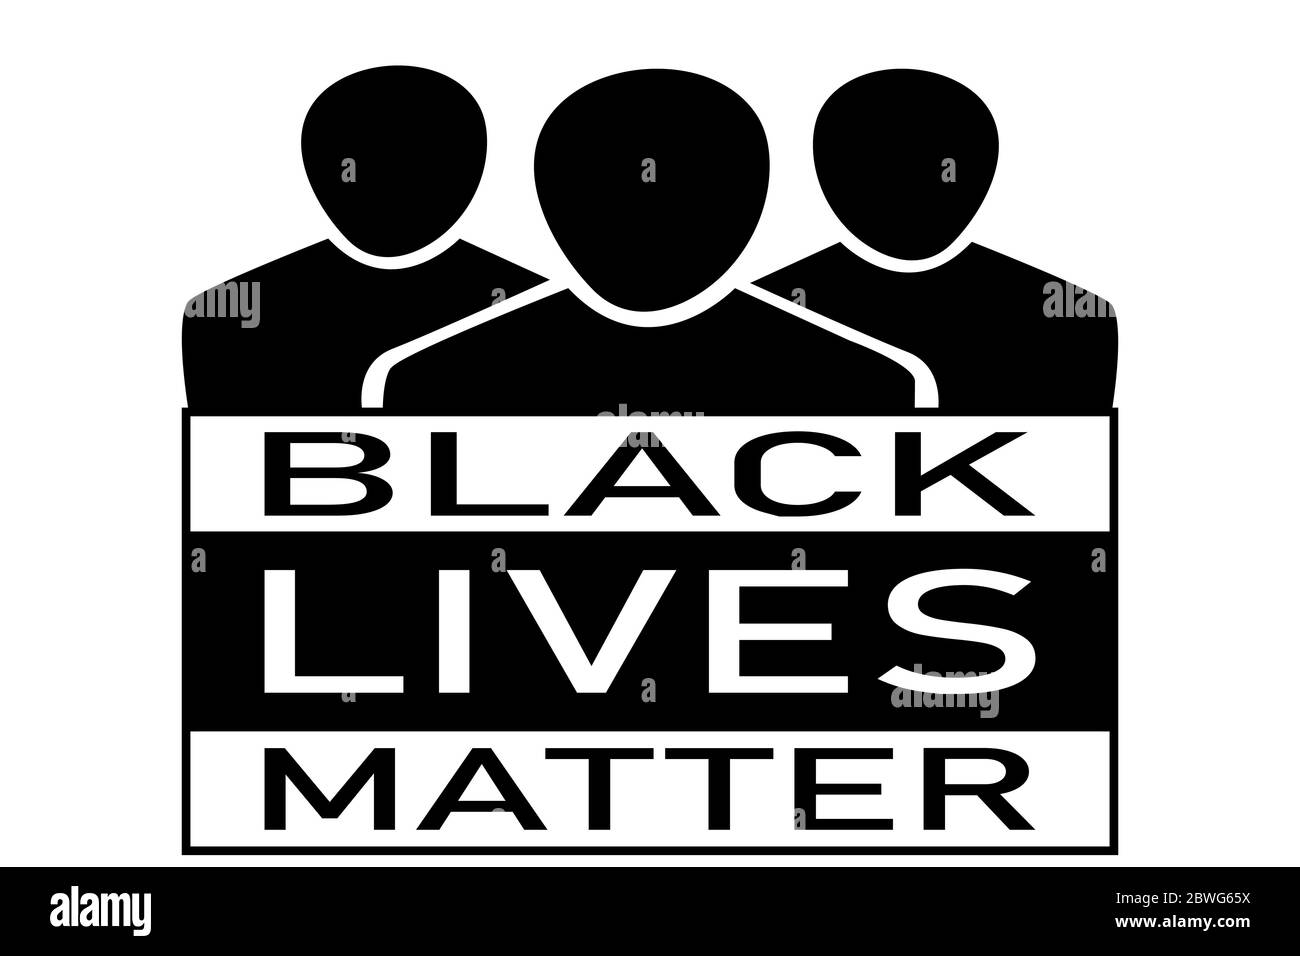 Gruppensymbole, die schwarze Personen mit dem Text unter „Black Lives Matter“ darstellen Stock Vektor